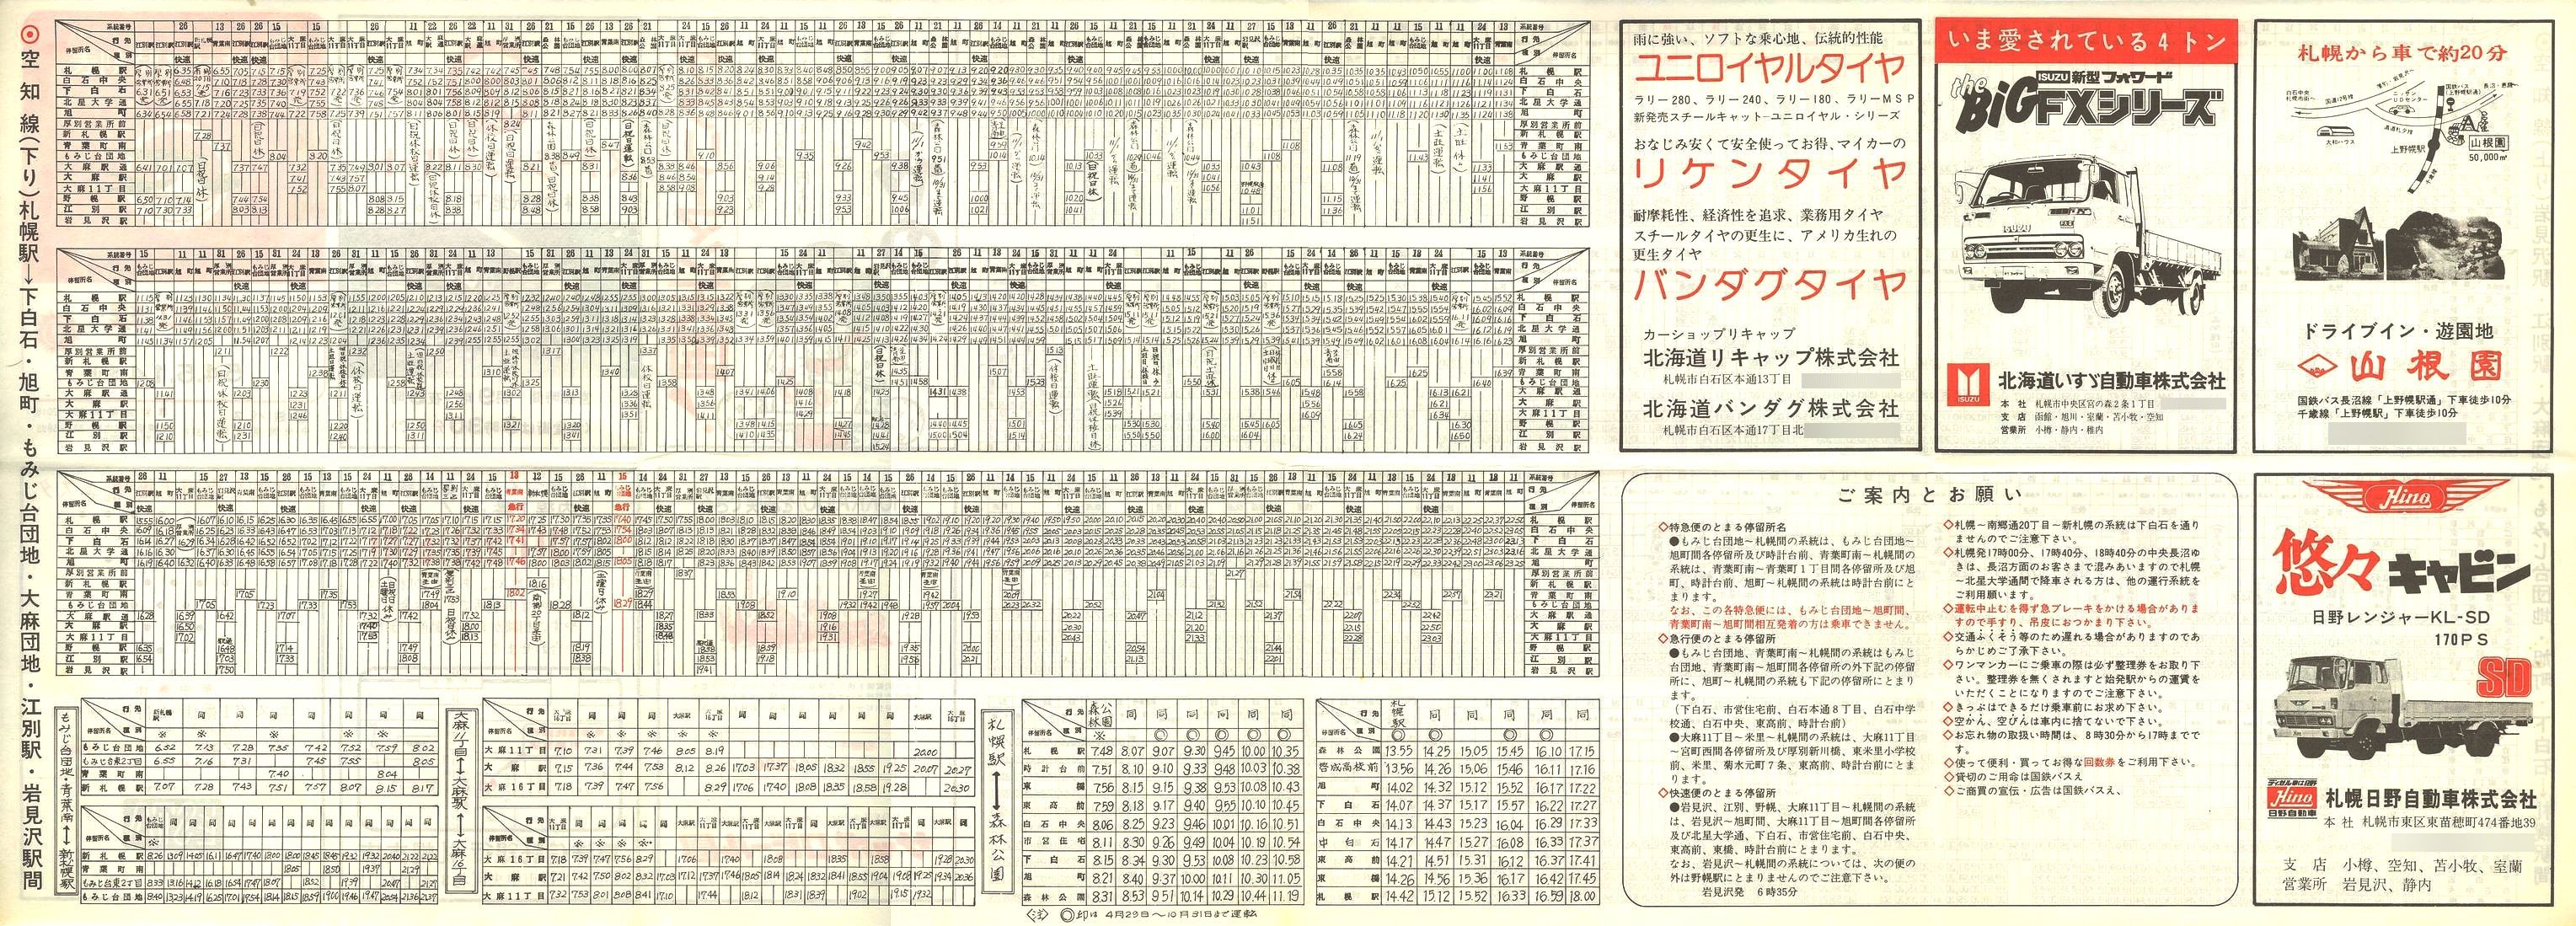 1979-05-14改正_国鉄バス_空知線時刻表裏面